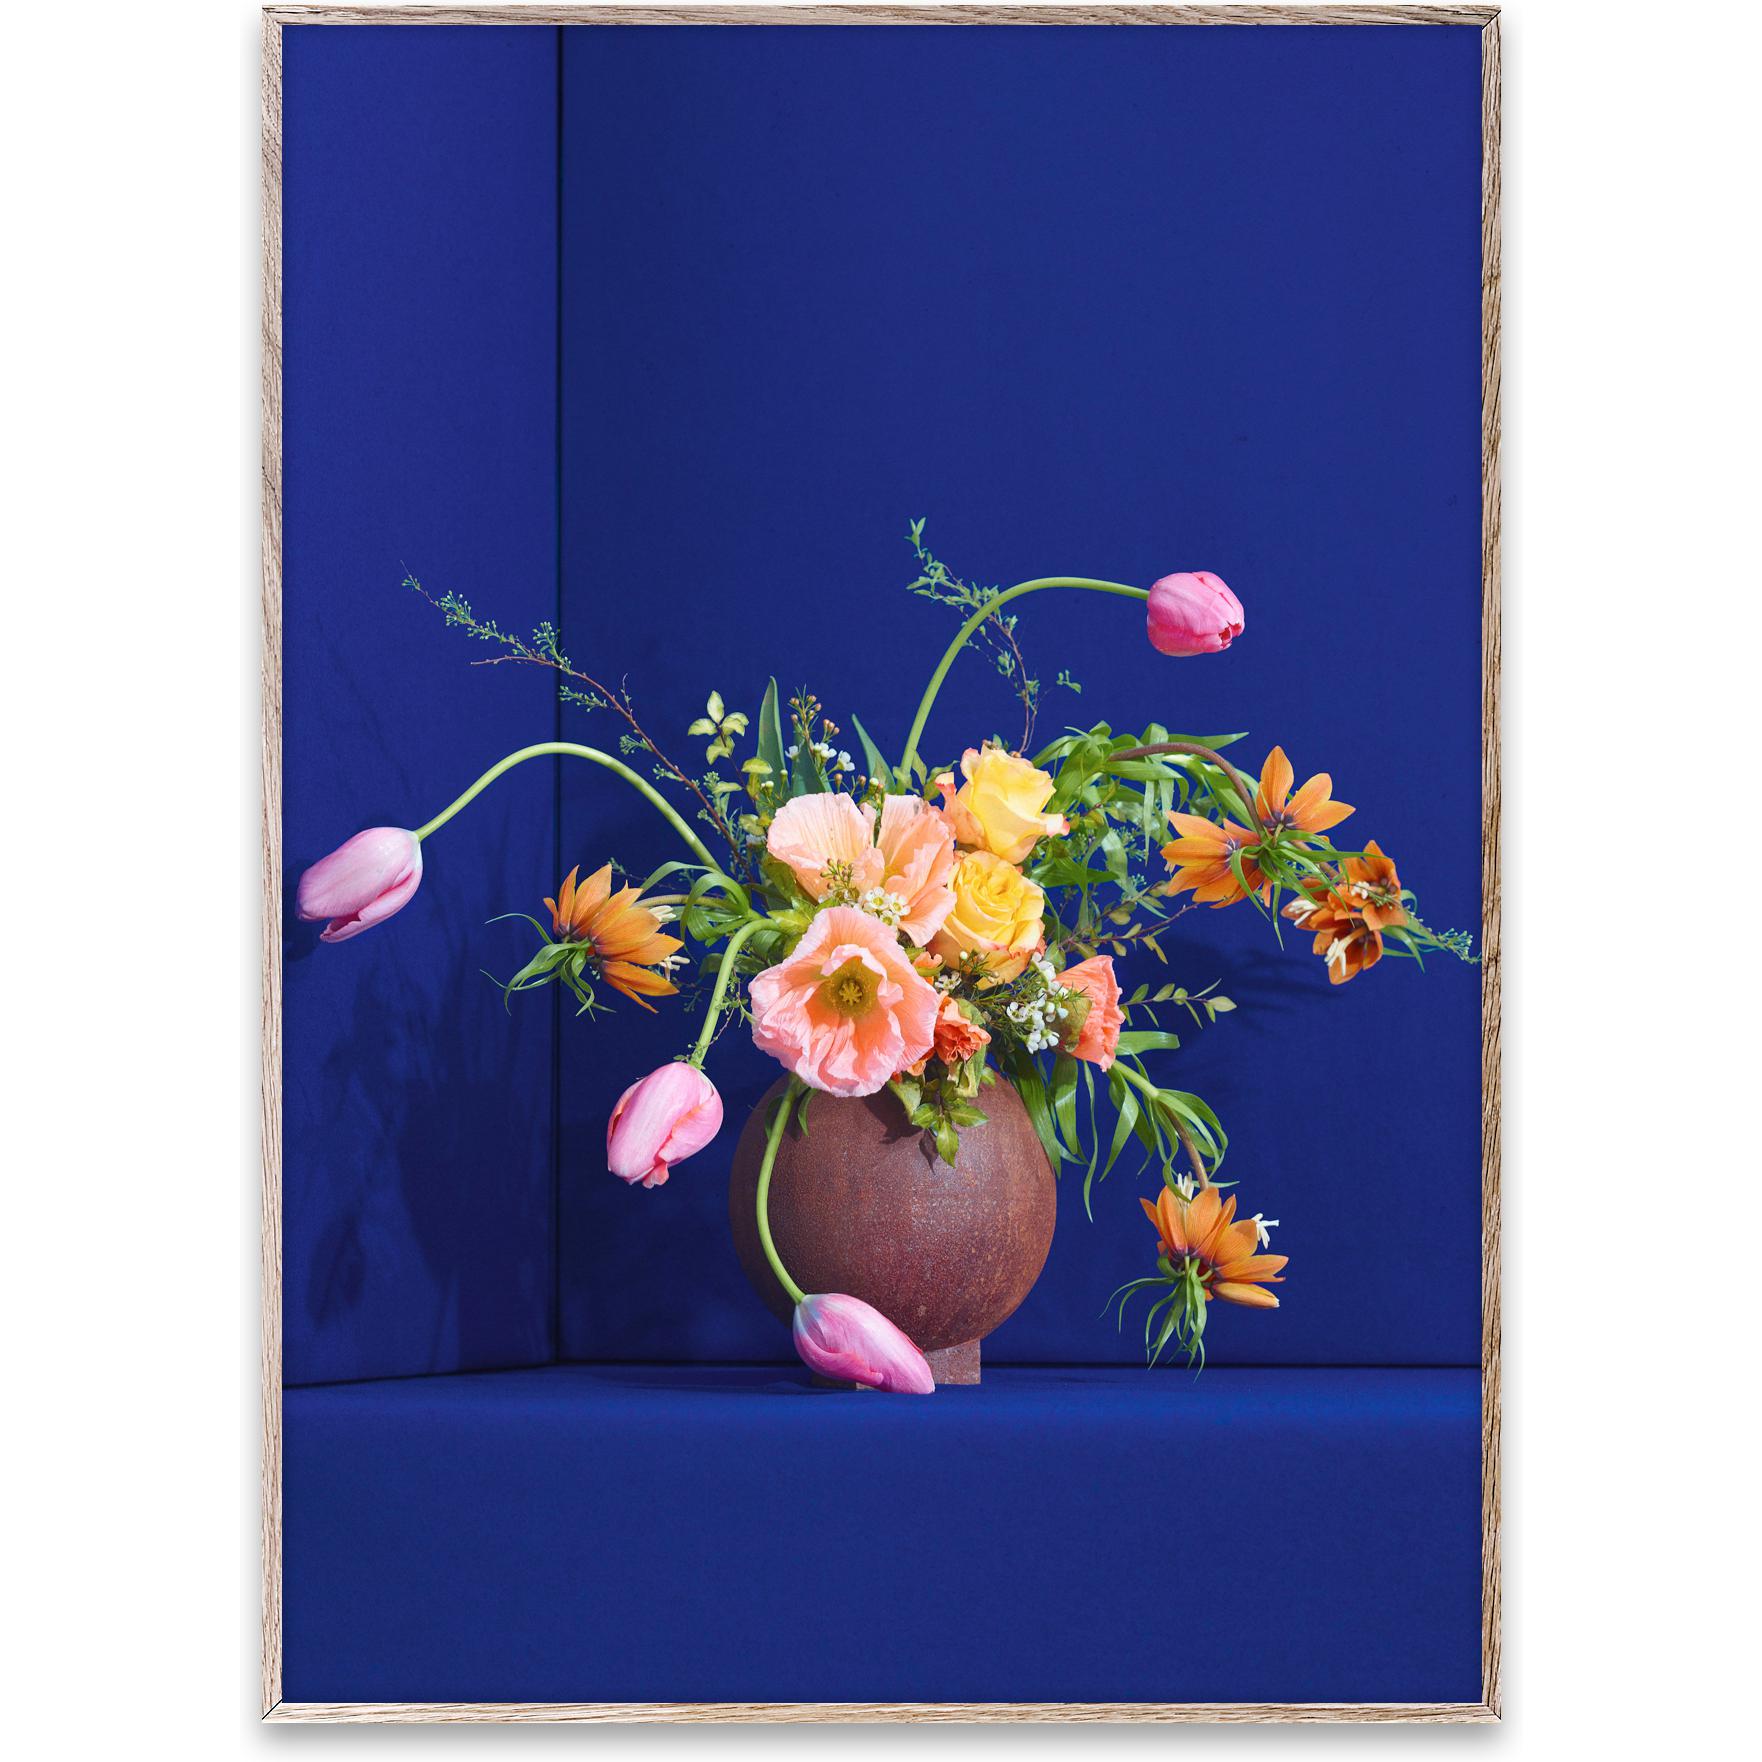 Paper Collective Blomst 01 Juliste 70x100 cm, sininen